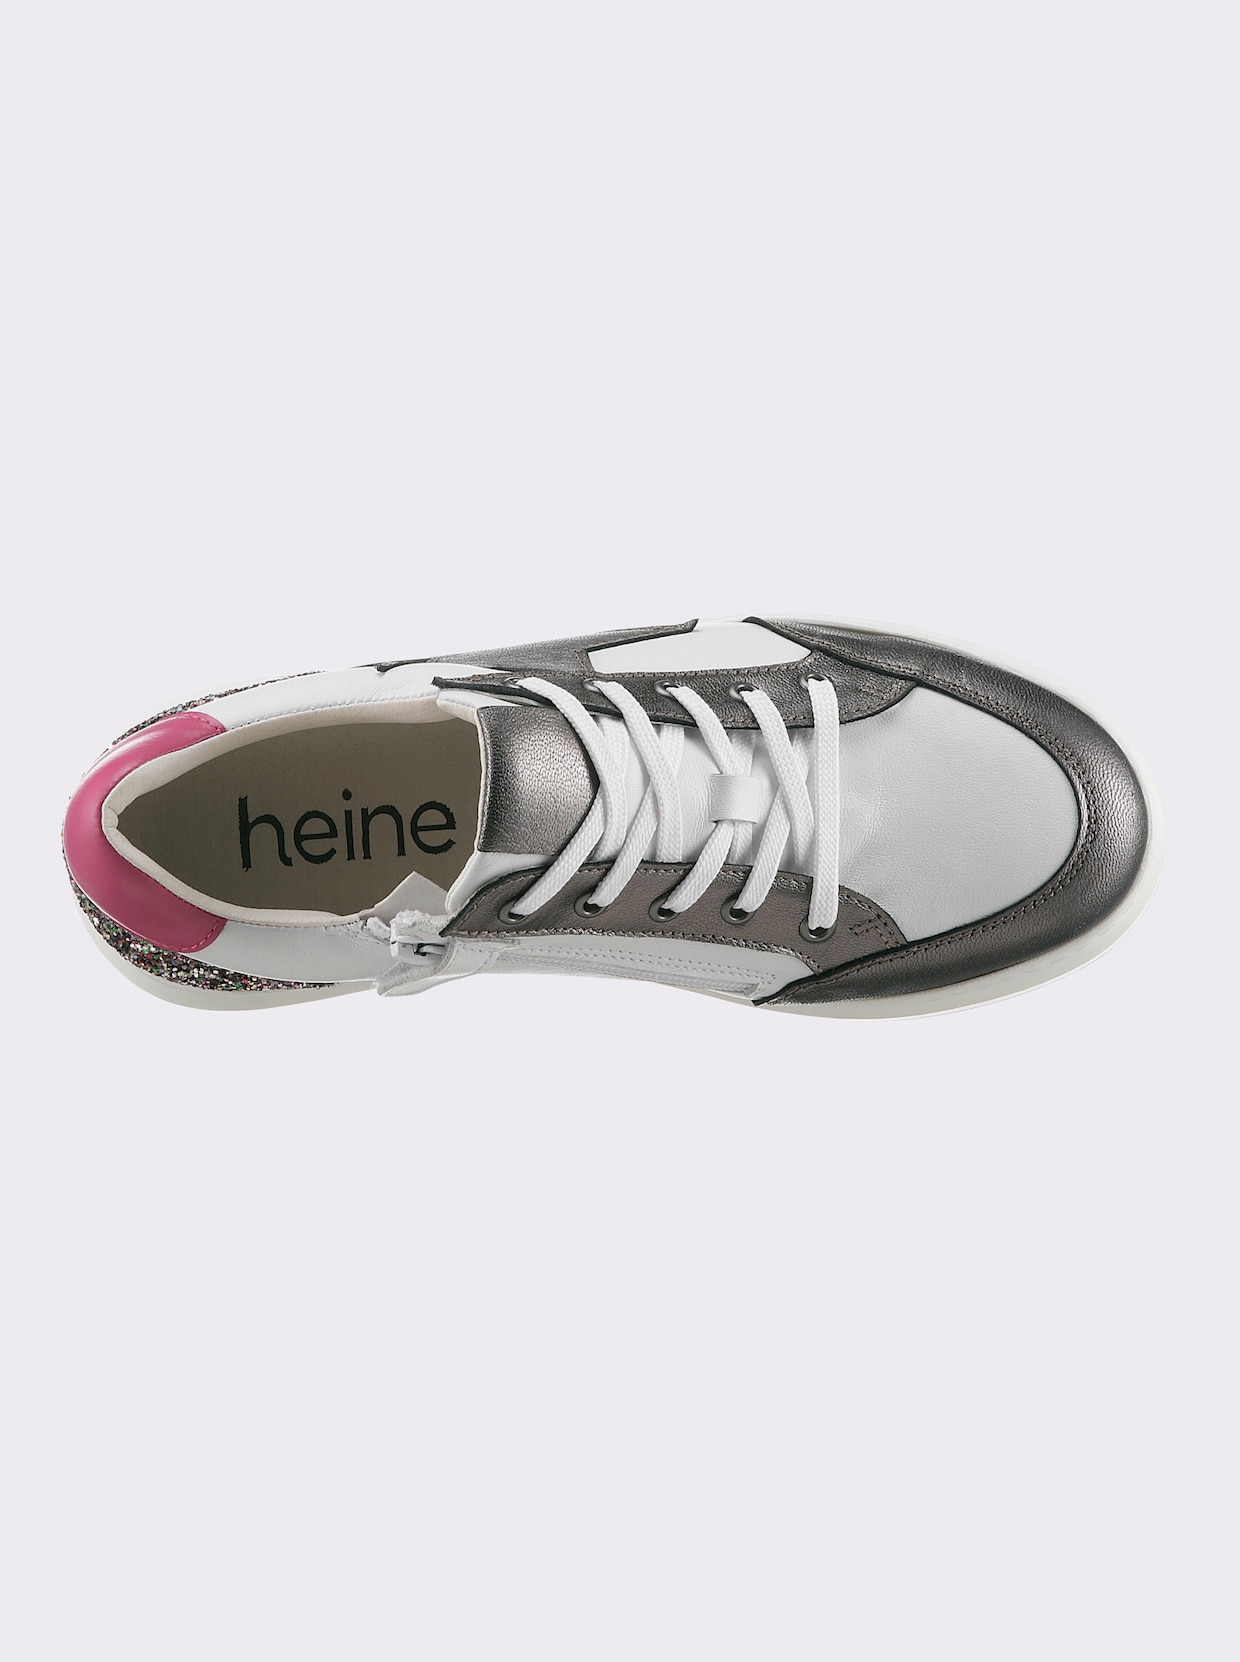 heine Sneaker - weiß-anthrazit-gemustert